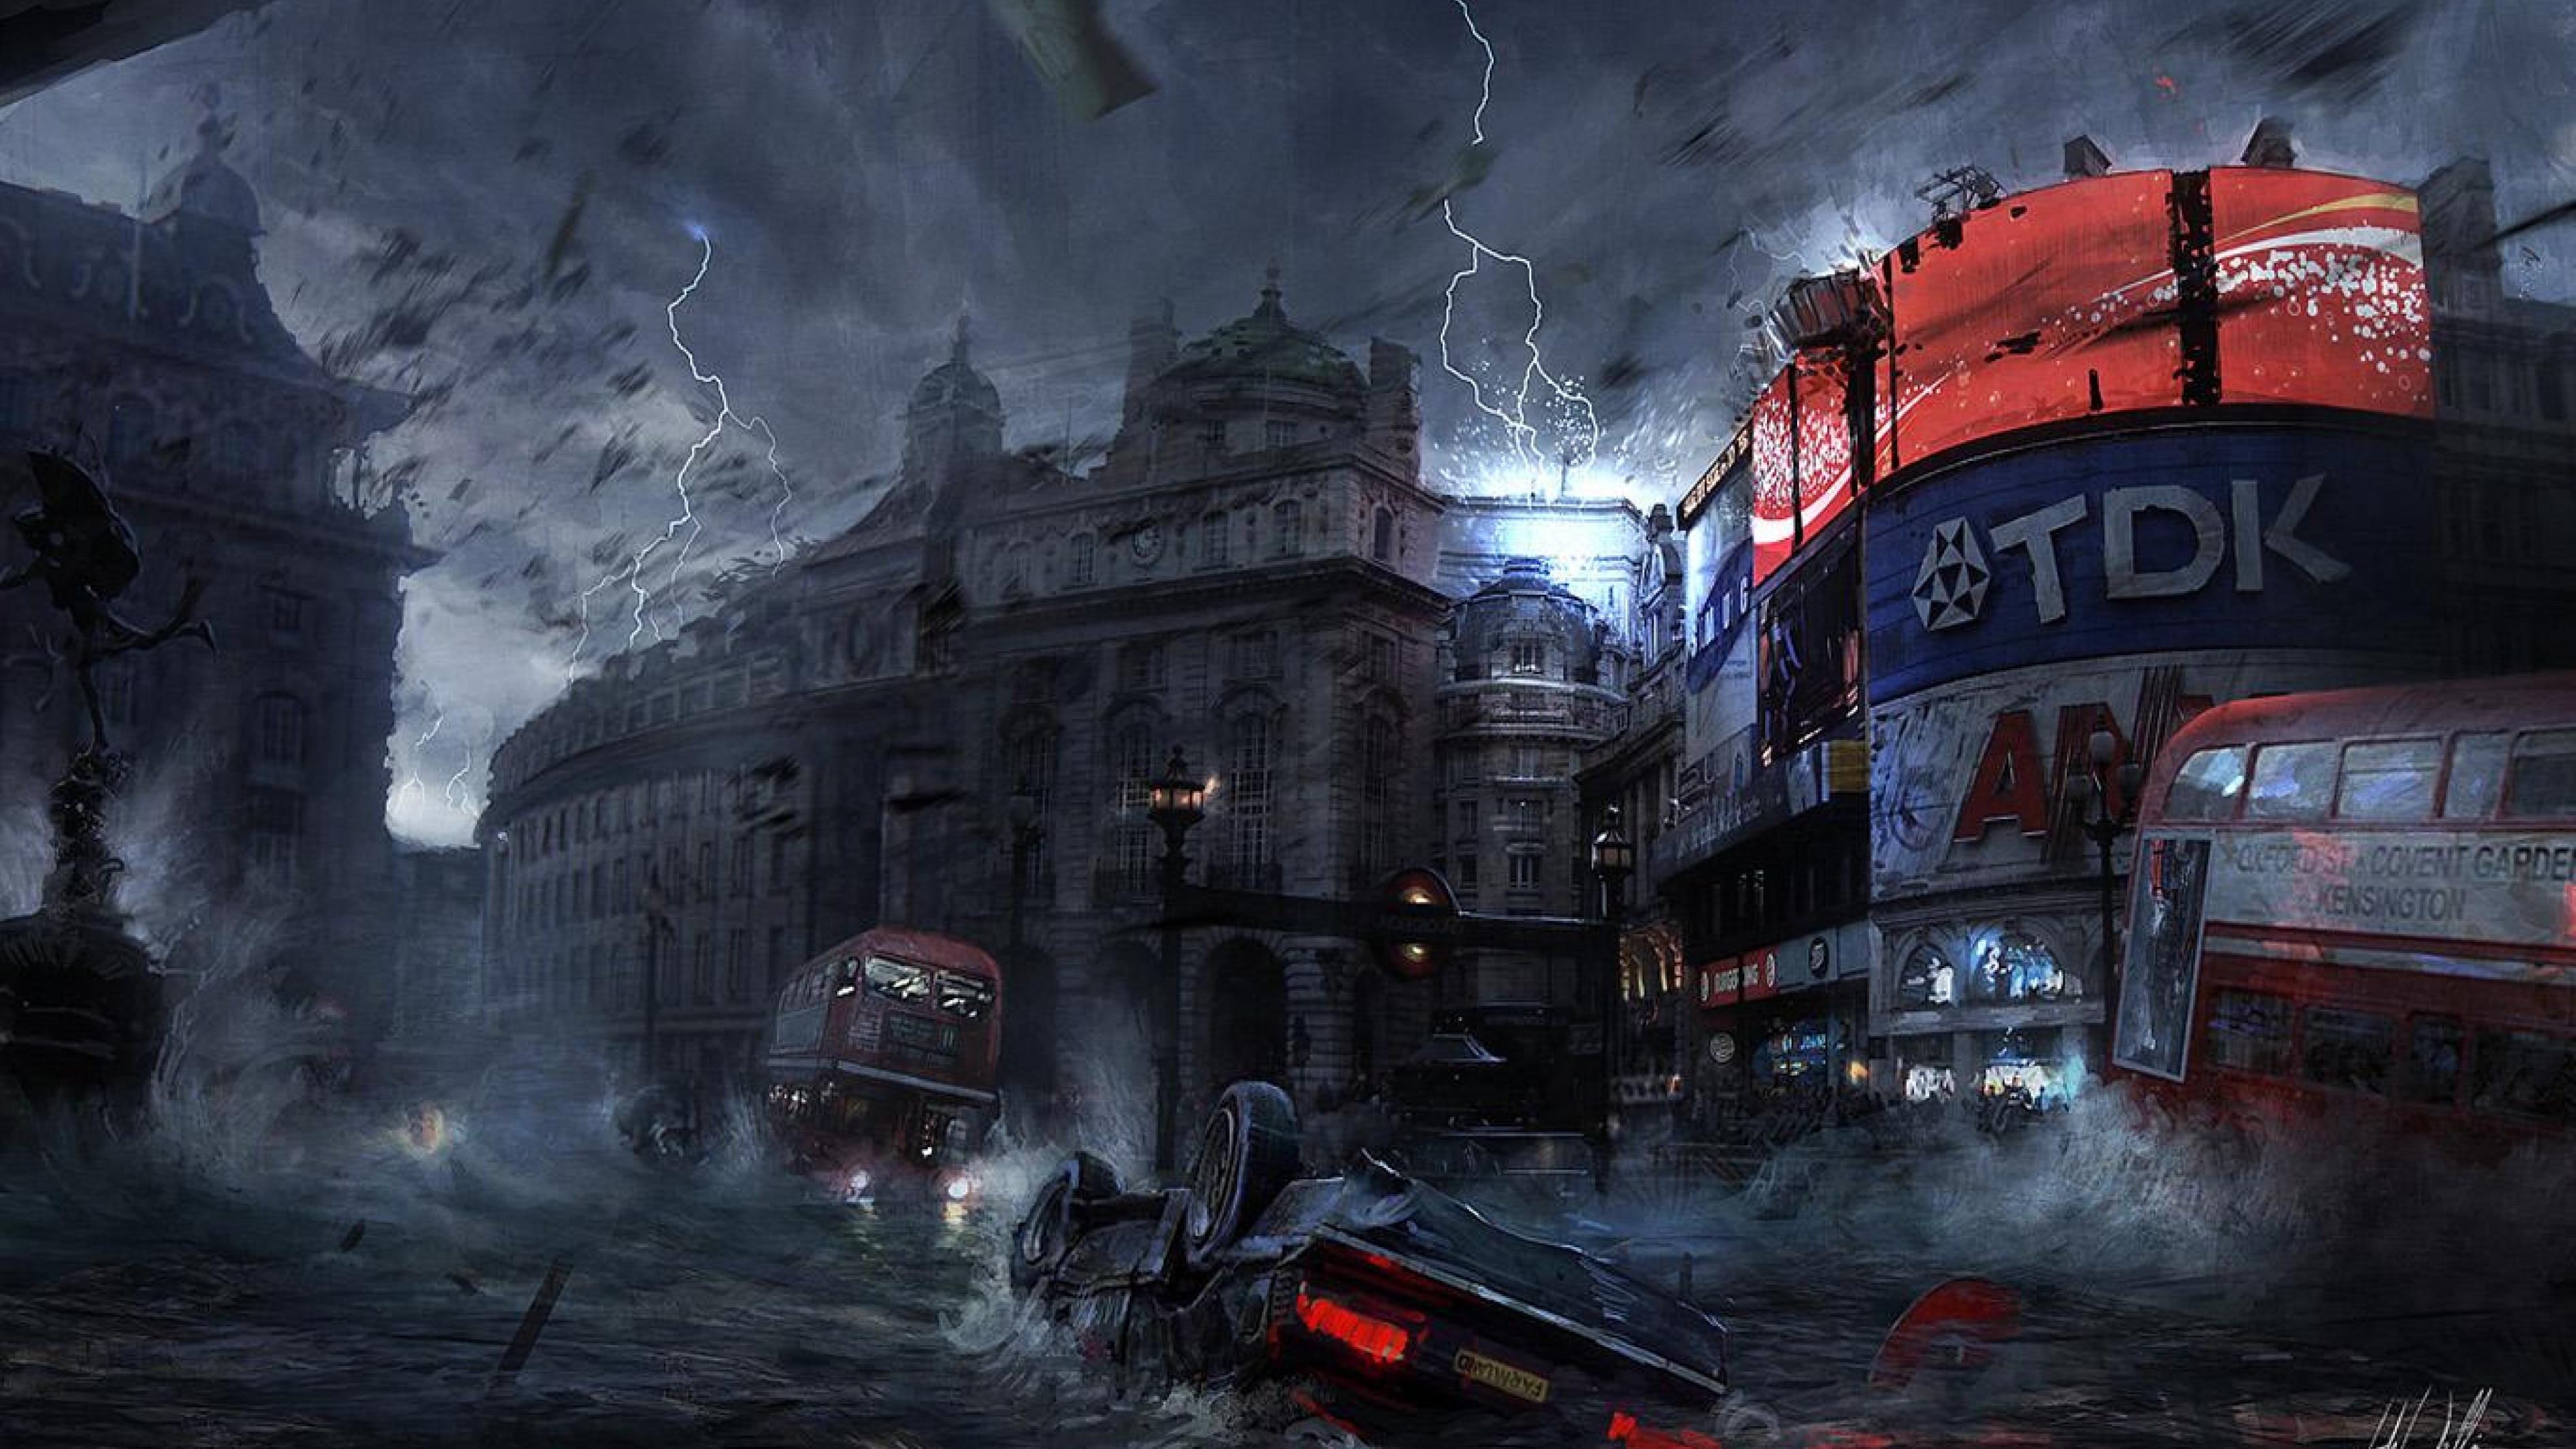 دانلود تصویر علمی تخیلی HD از توفان عجیب در شهر لندن